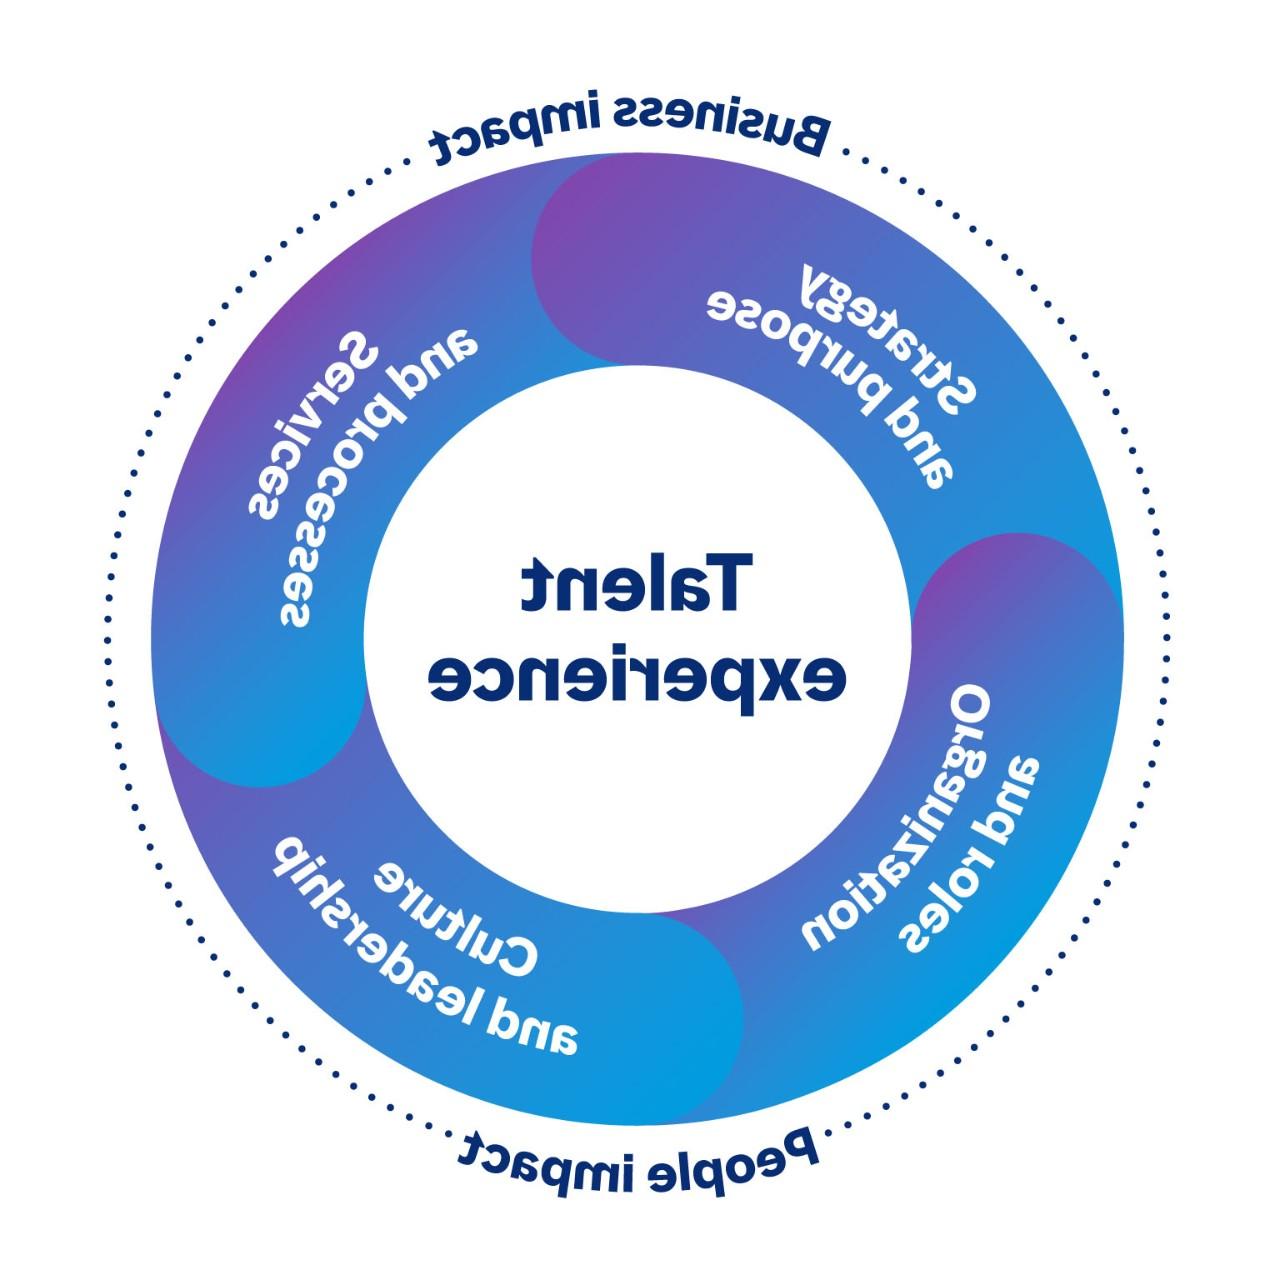 圆形图像显示了对公司和人都有影响的语言体验的相关区域. 这四个方面是战略和目标, 服务及程序, 文化与领导力, 组织和角色.